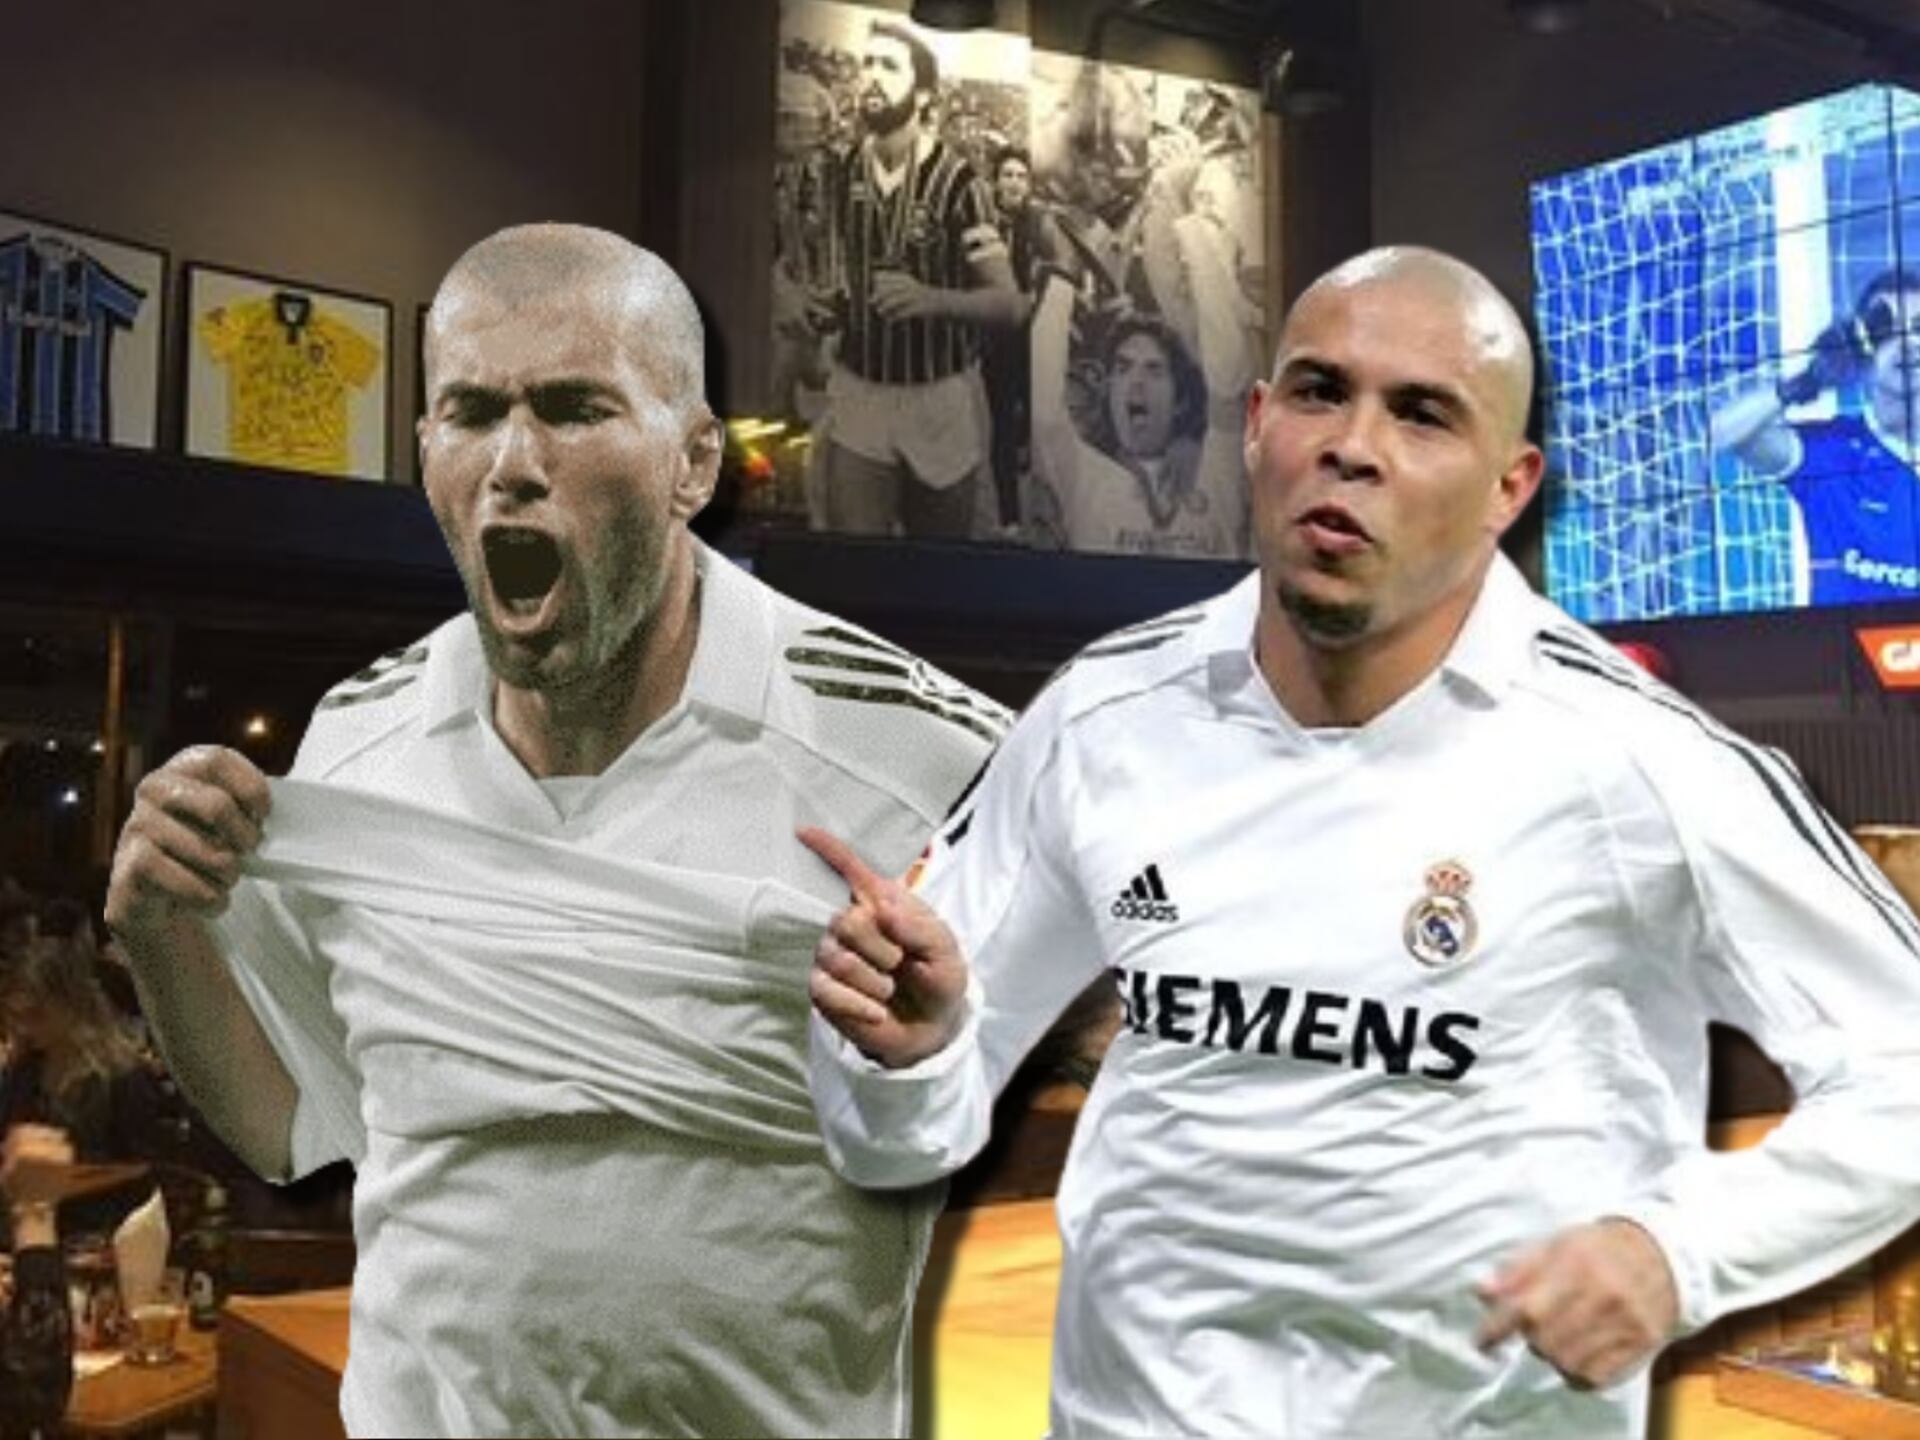 Ganó más títulos que Zidane e hizo más goles que Ronaldo, ahora tiene un bar